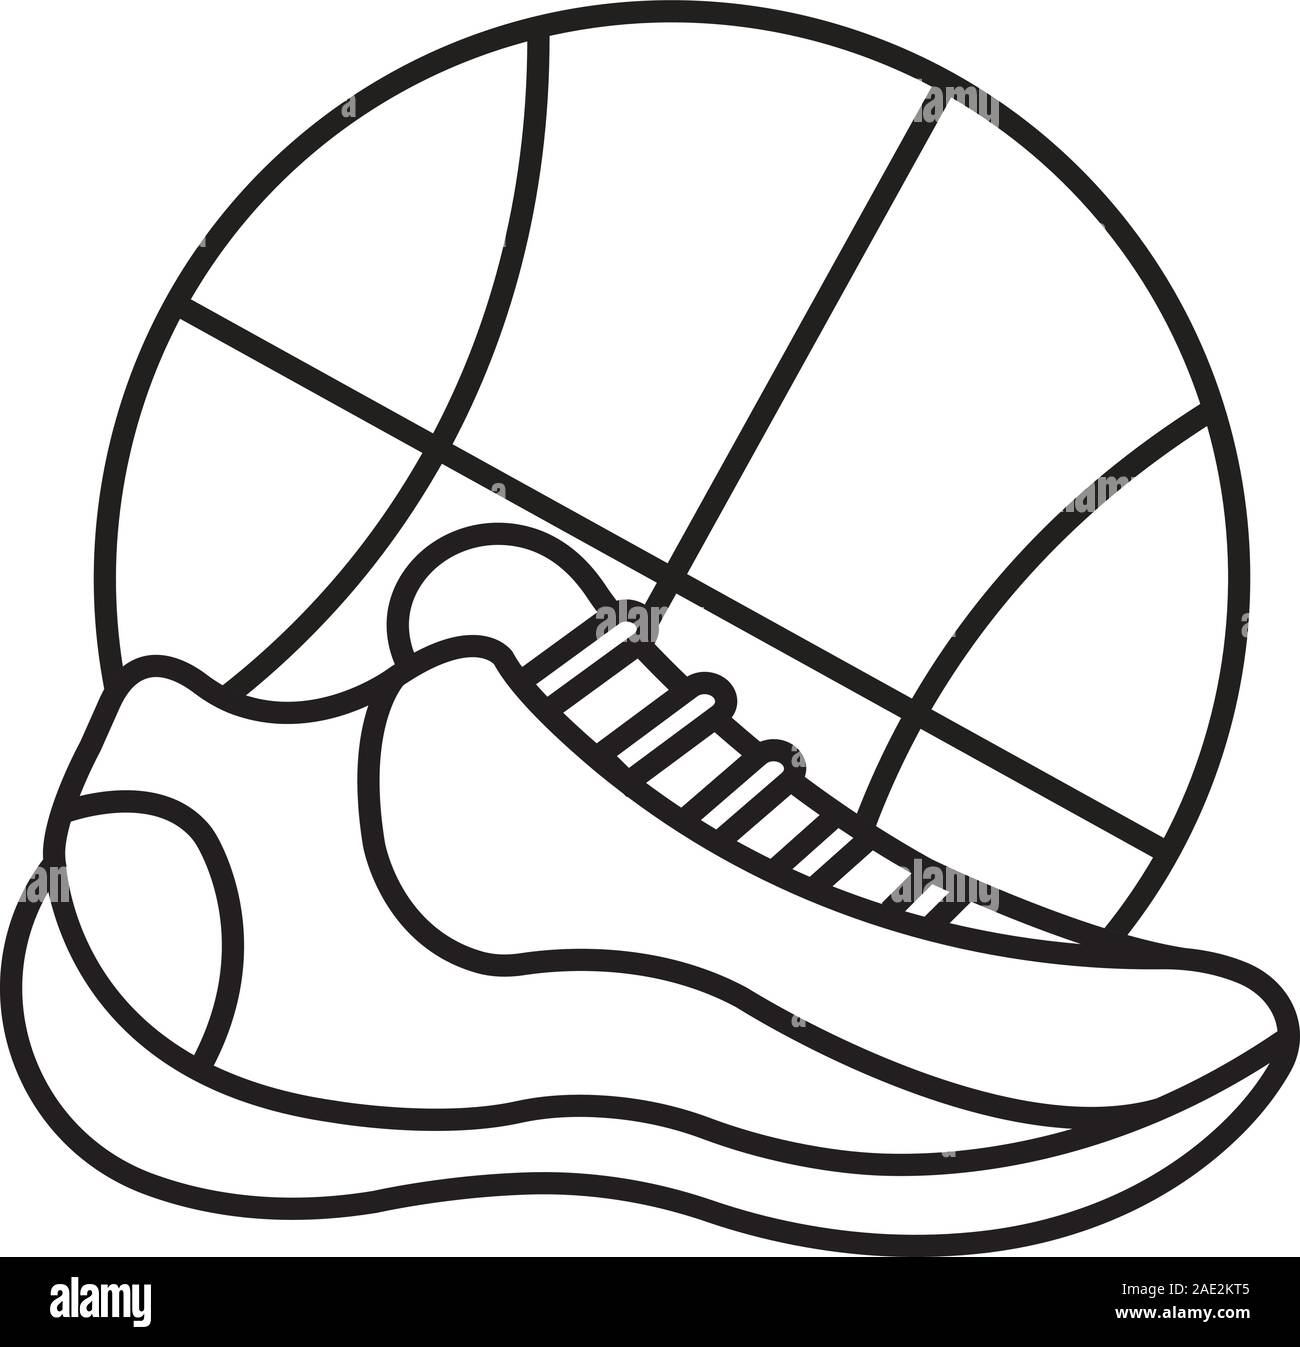 Chaussures De Sport Illustration Vectorielle De Croquis Dessinés à La Main